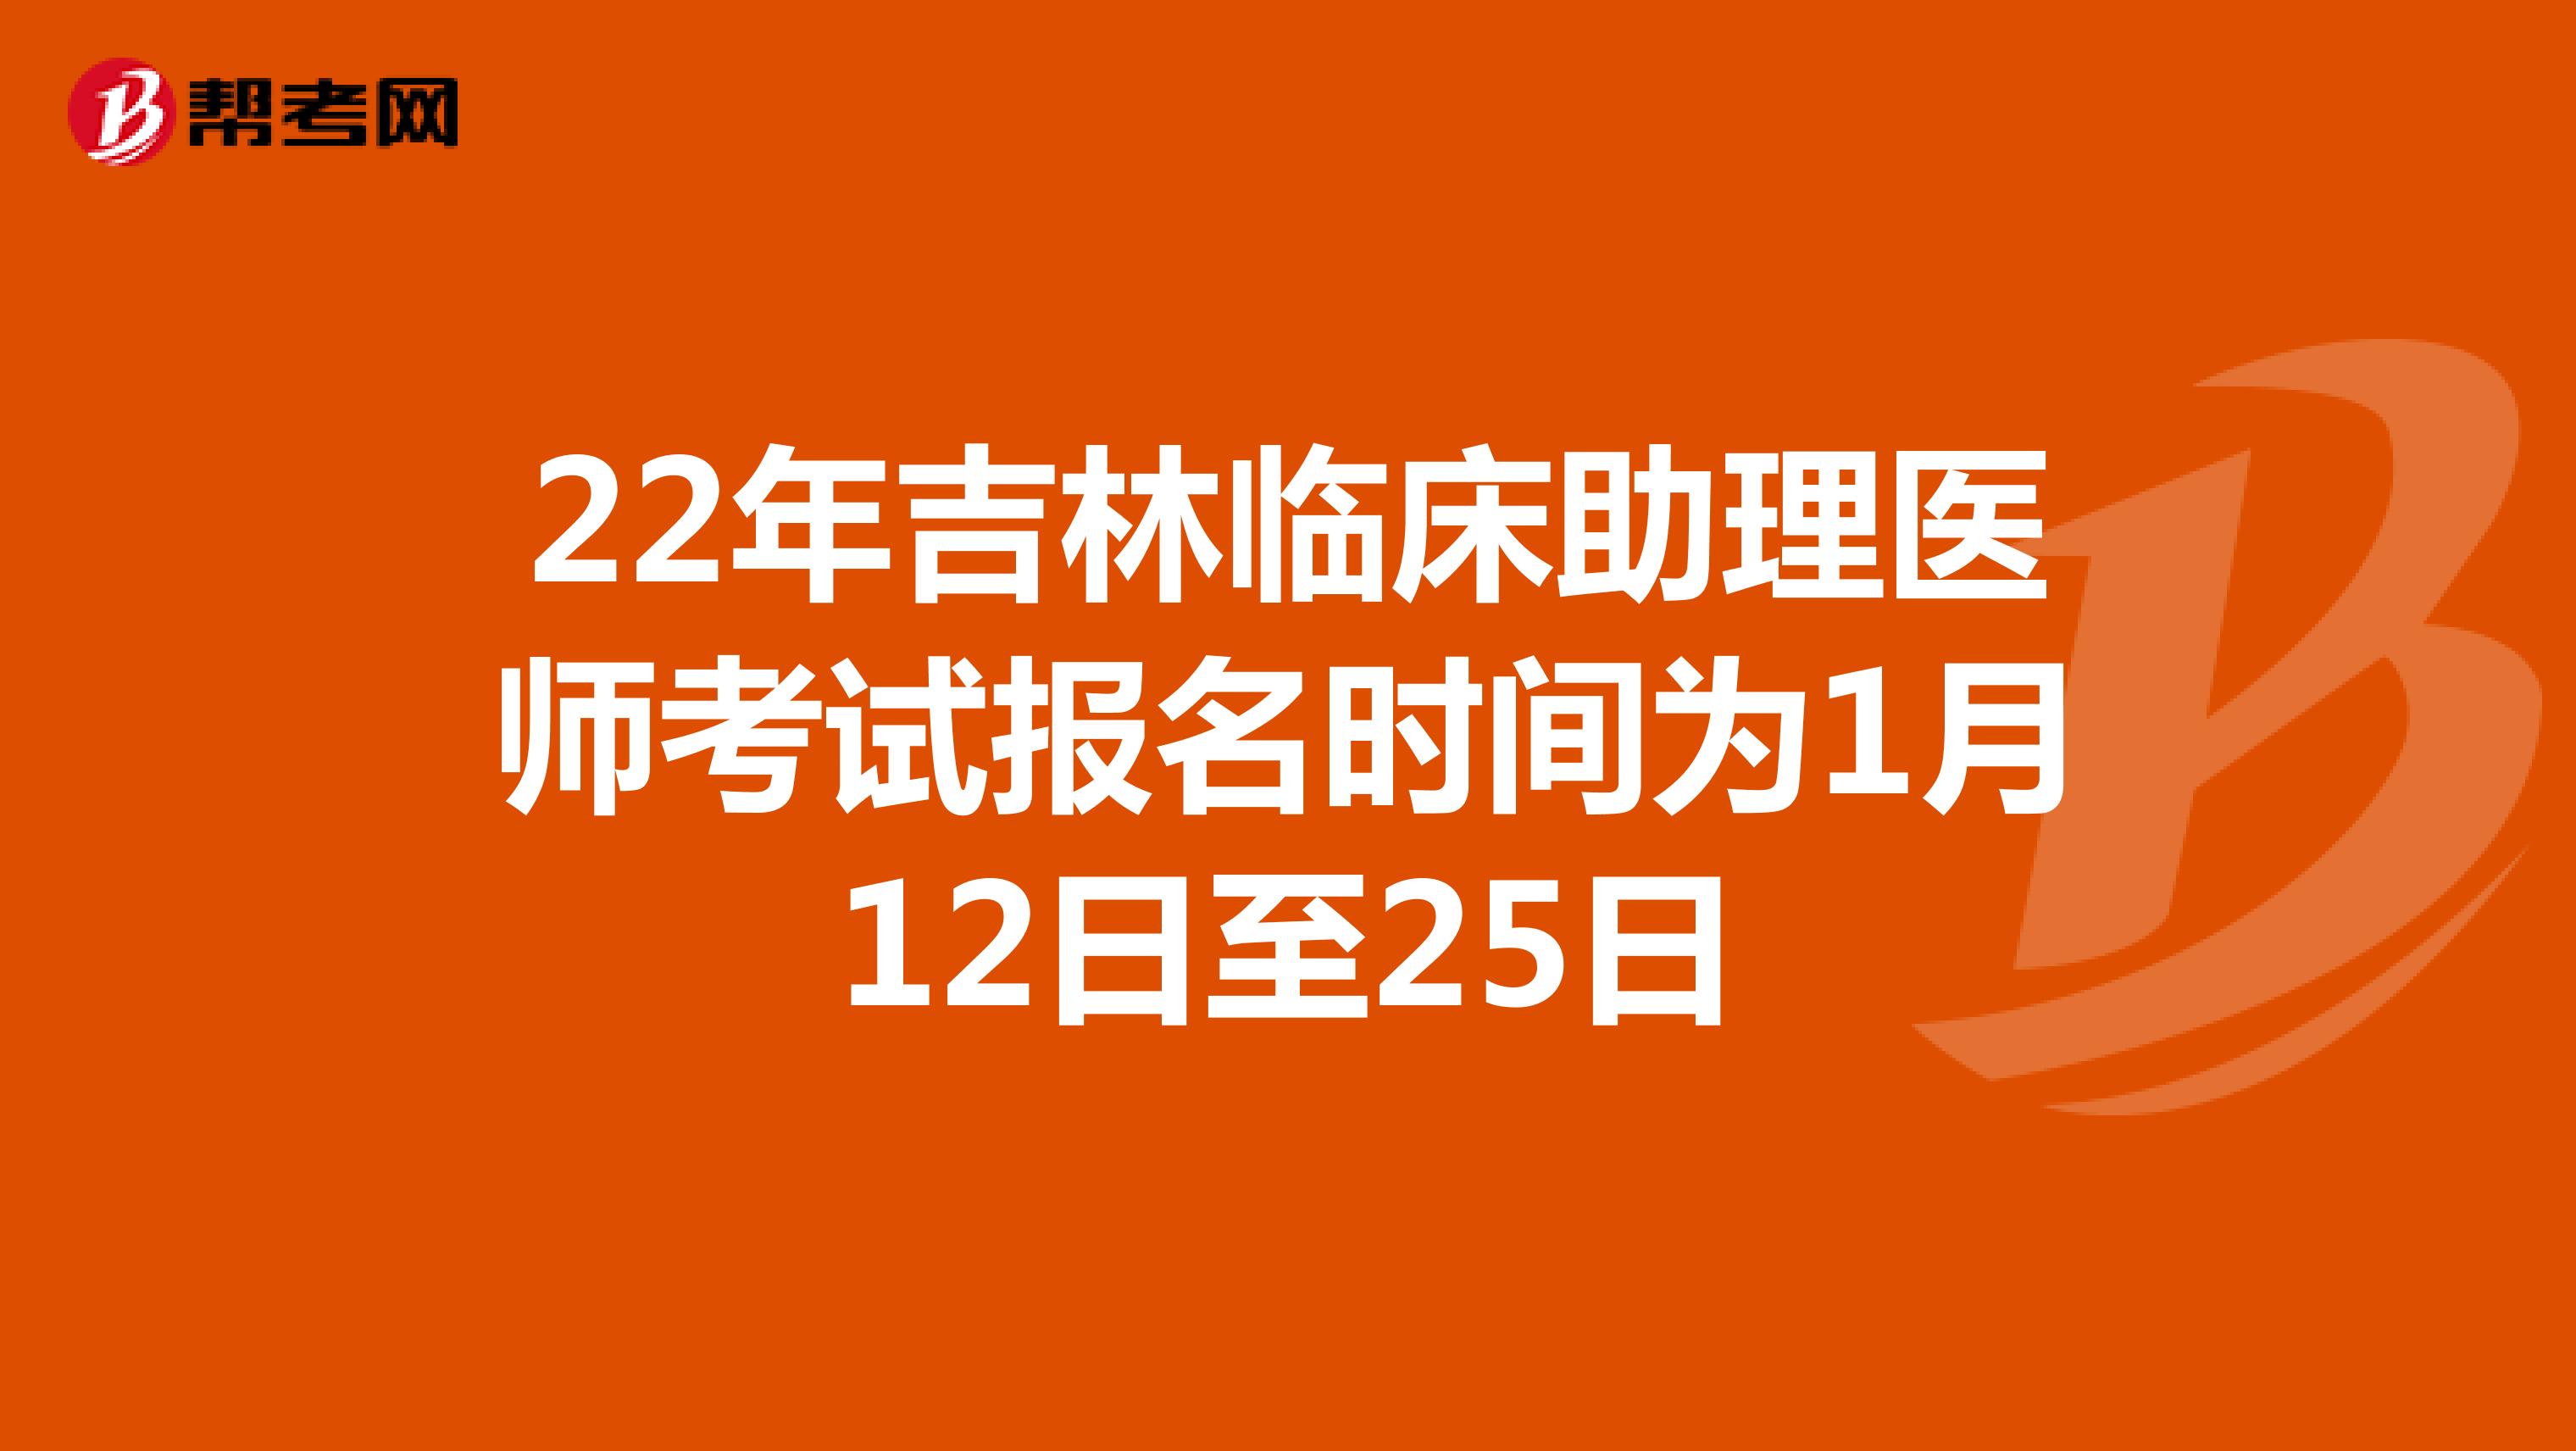 22年吉林临床助理医师考试报名时间为1月12日至25日